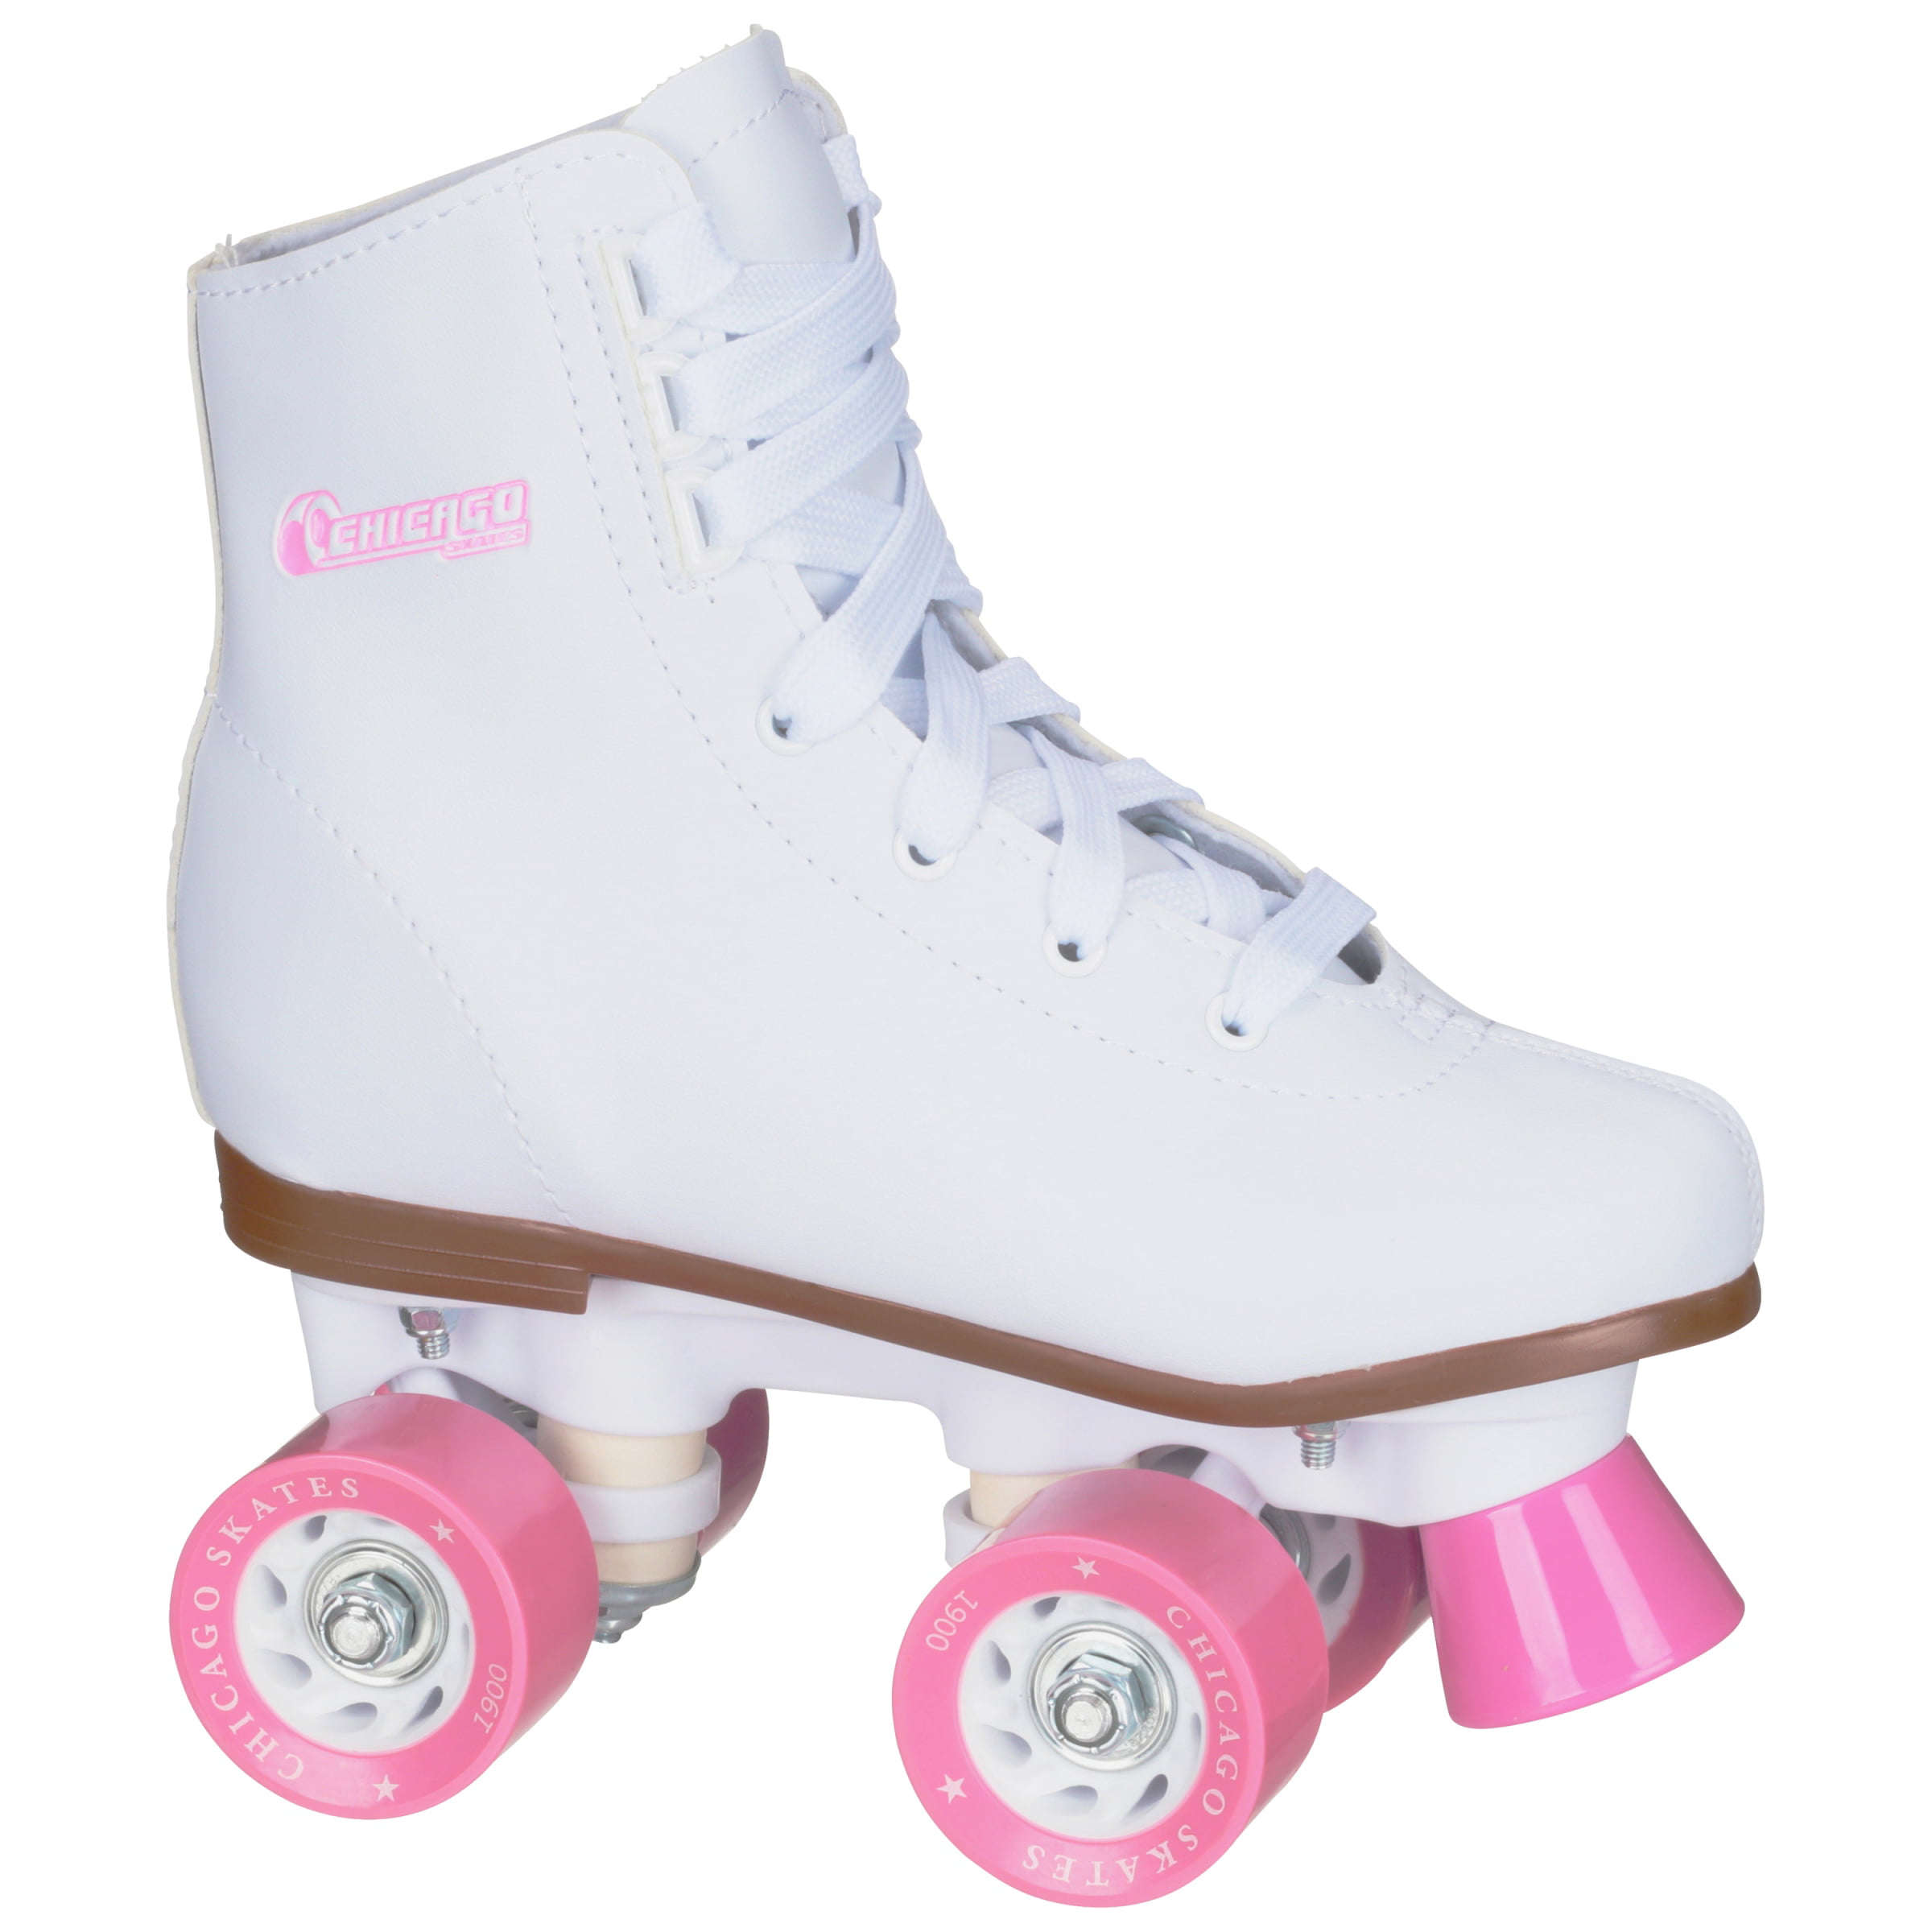 Chicago Girls Sidewalk Roller Skate White Youth Quad Skates 